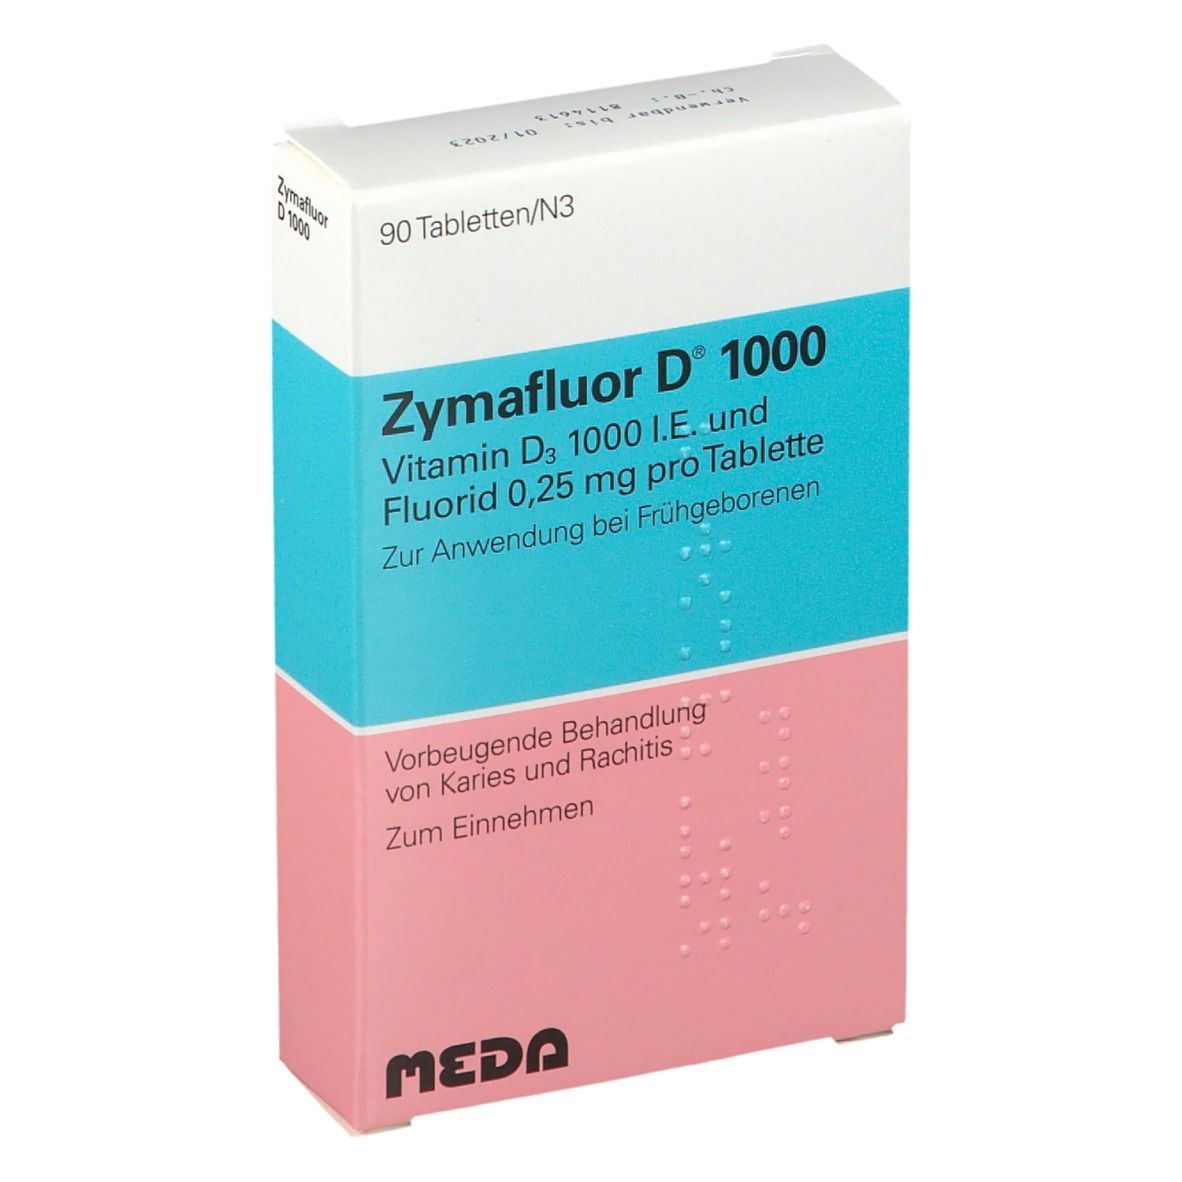 Zymafluor® D 1000 Tabletten